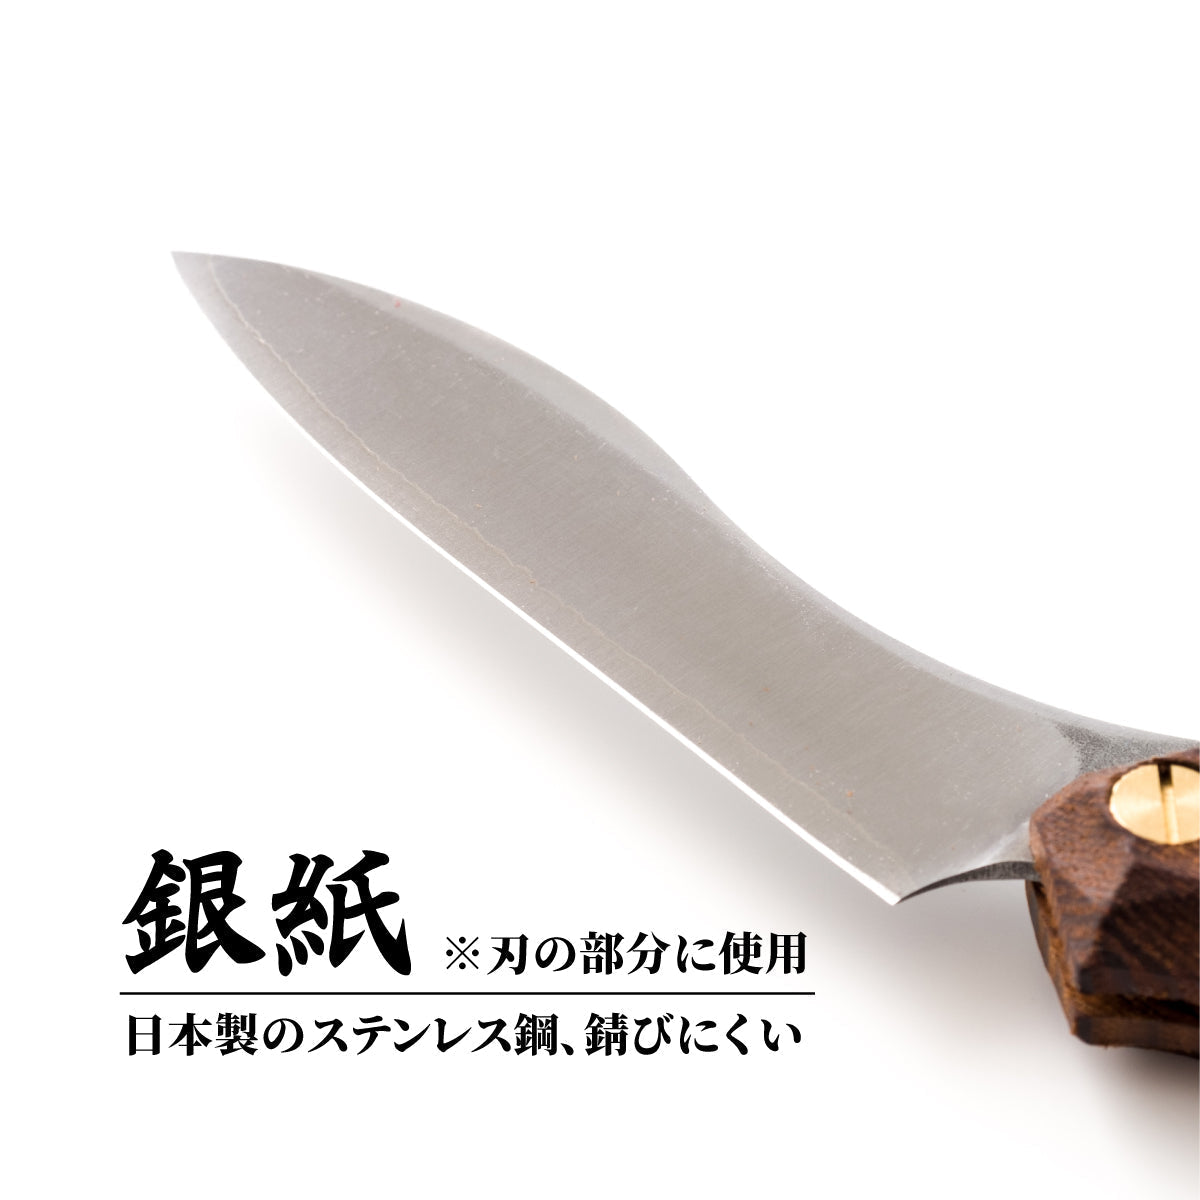 折畳式料理ナイフ 名栗オノオレカンバ  (ステンレス鋼/銀紙三号) 12,100円